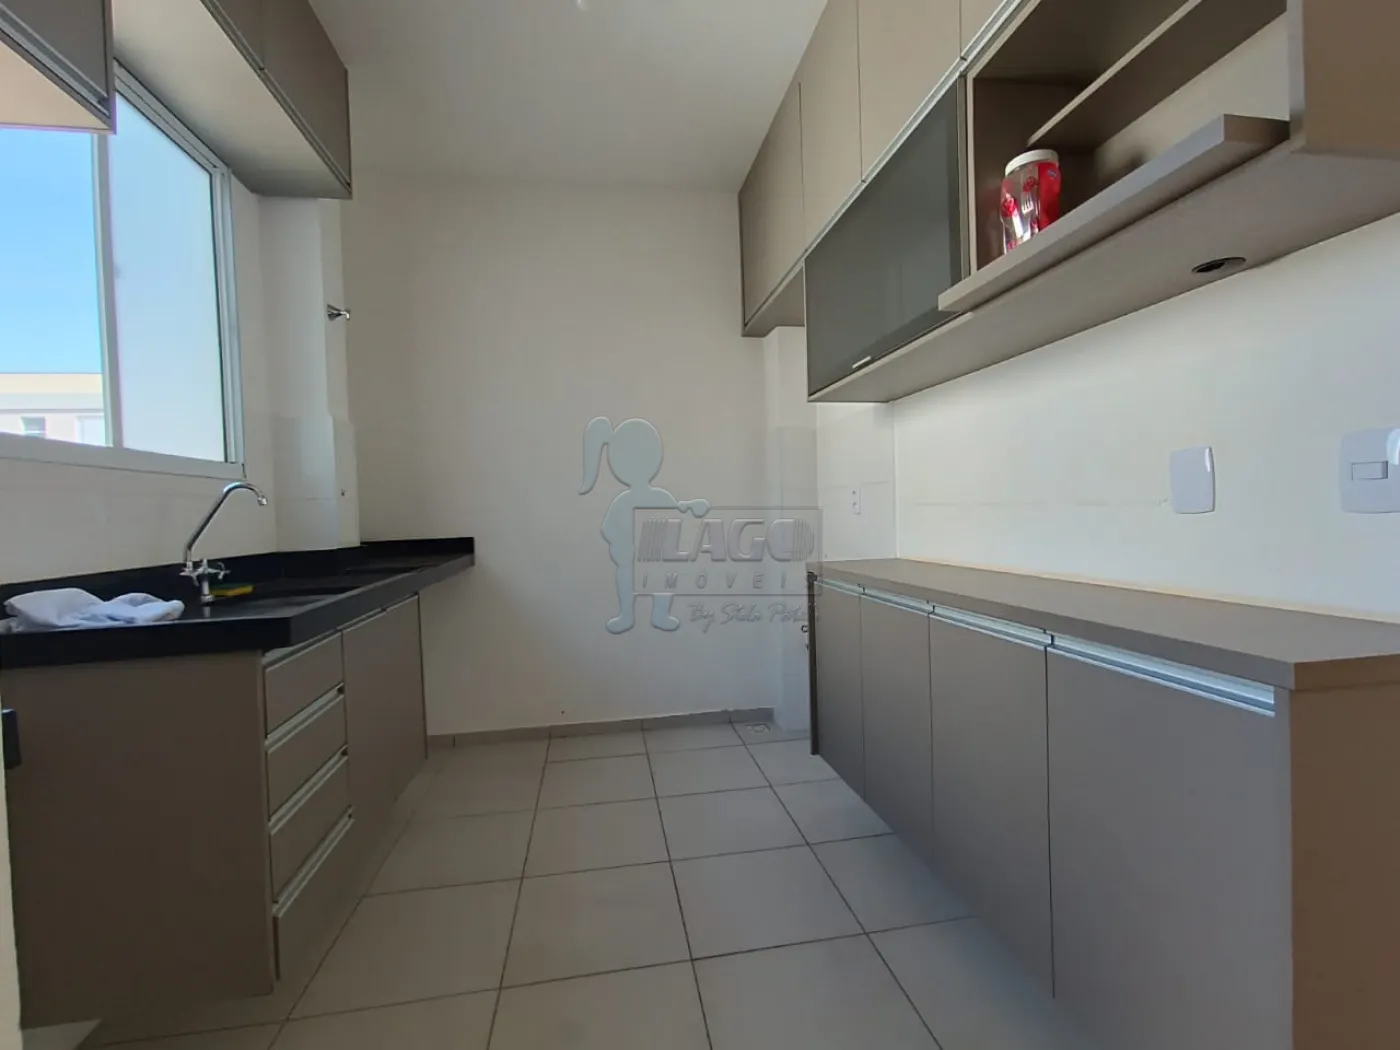 Comprar Apartamento / Padrão em Ribeirão Preto R$ 240.000,00 - Foto 6